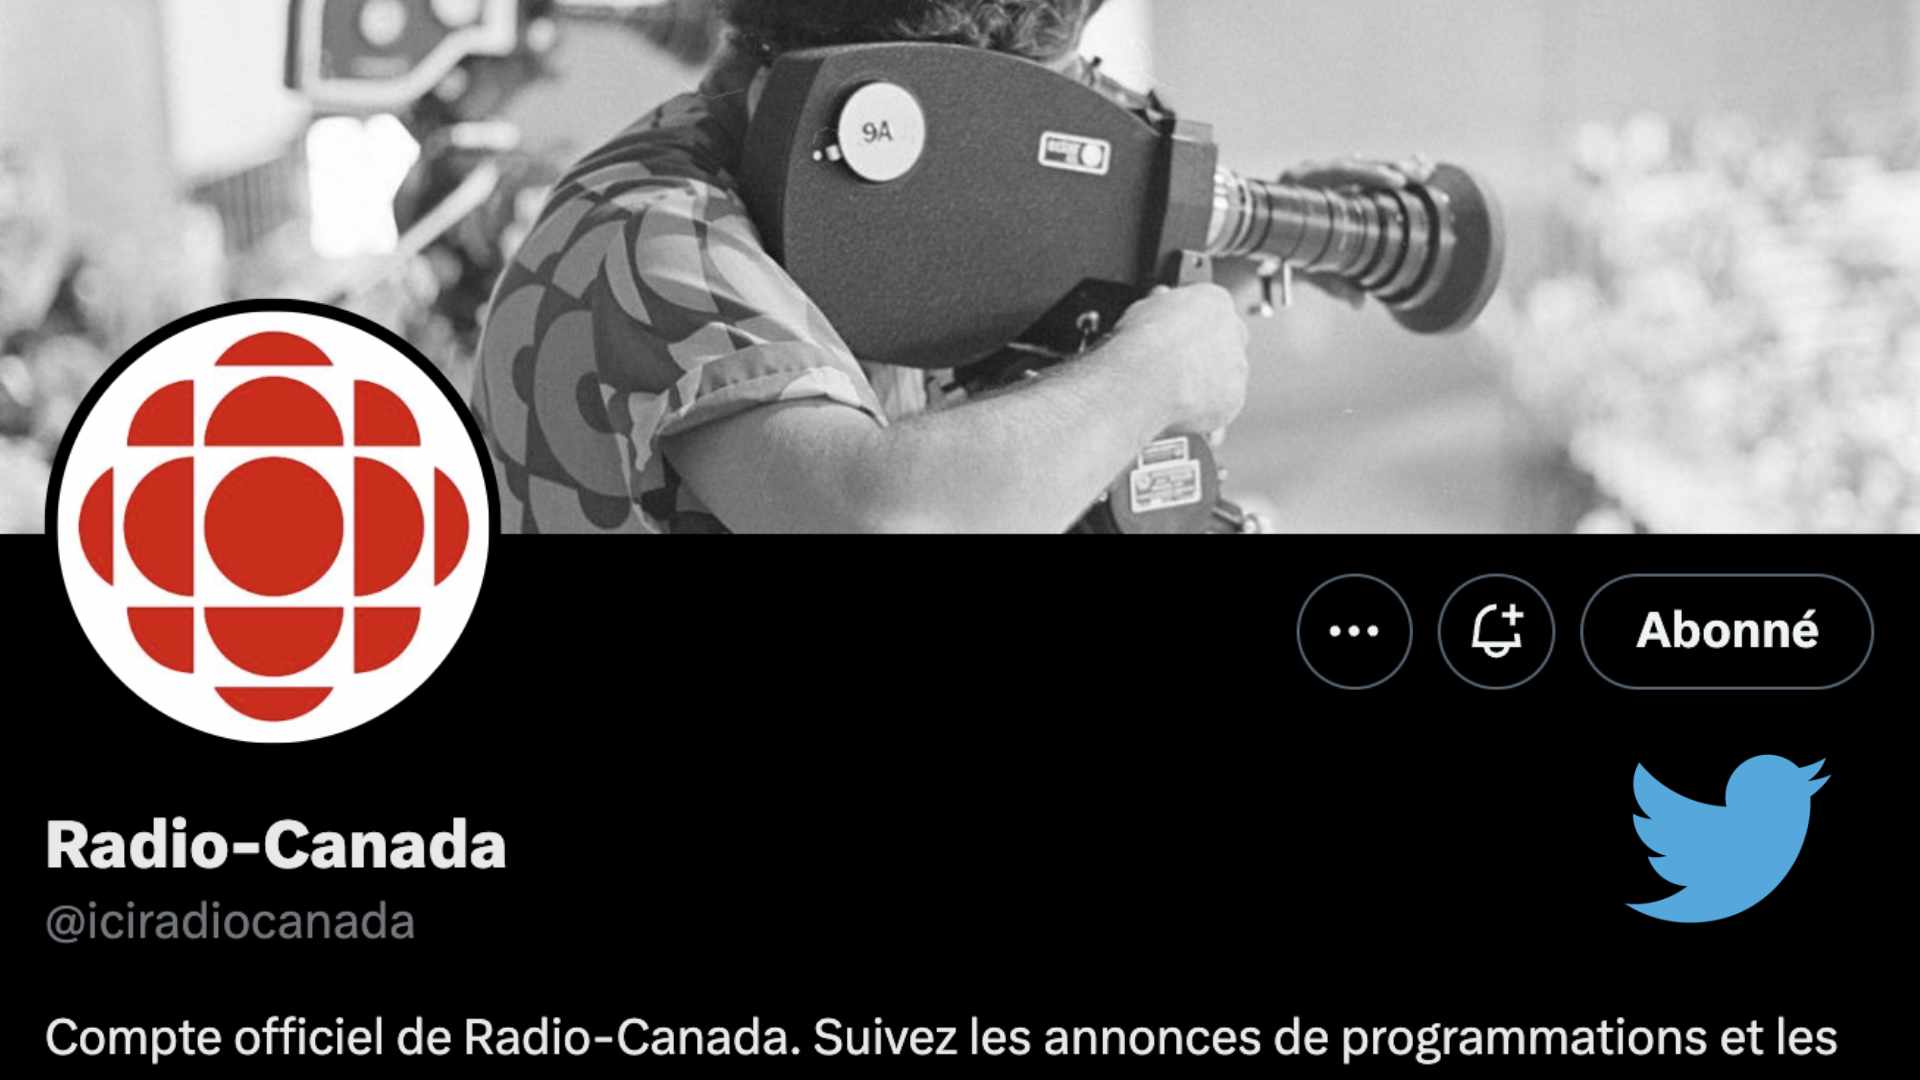 Twitter elimina “mención incómoda” a Radio-Canadá